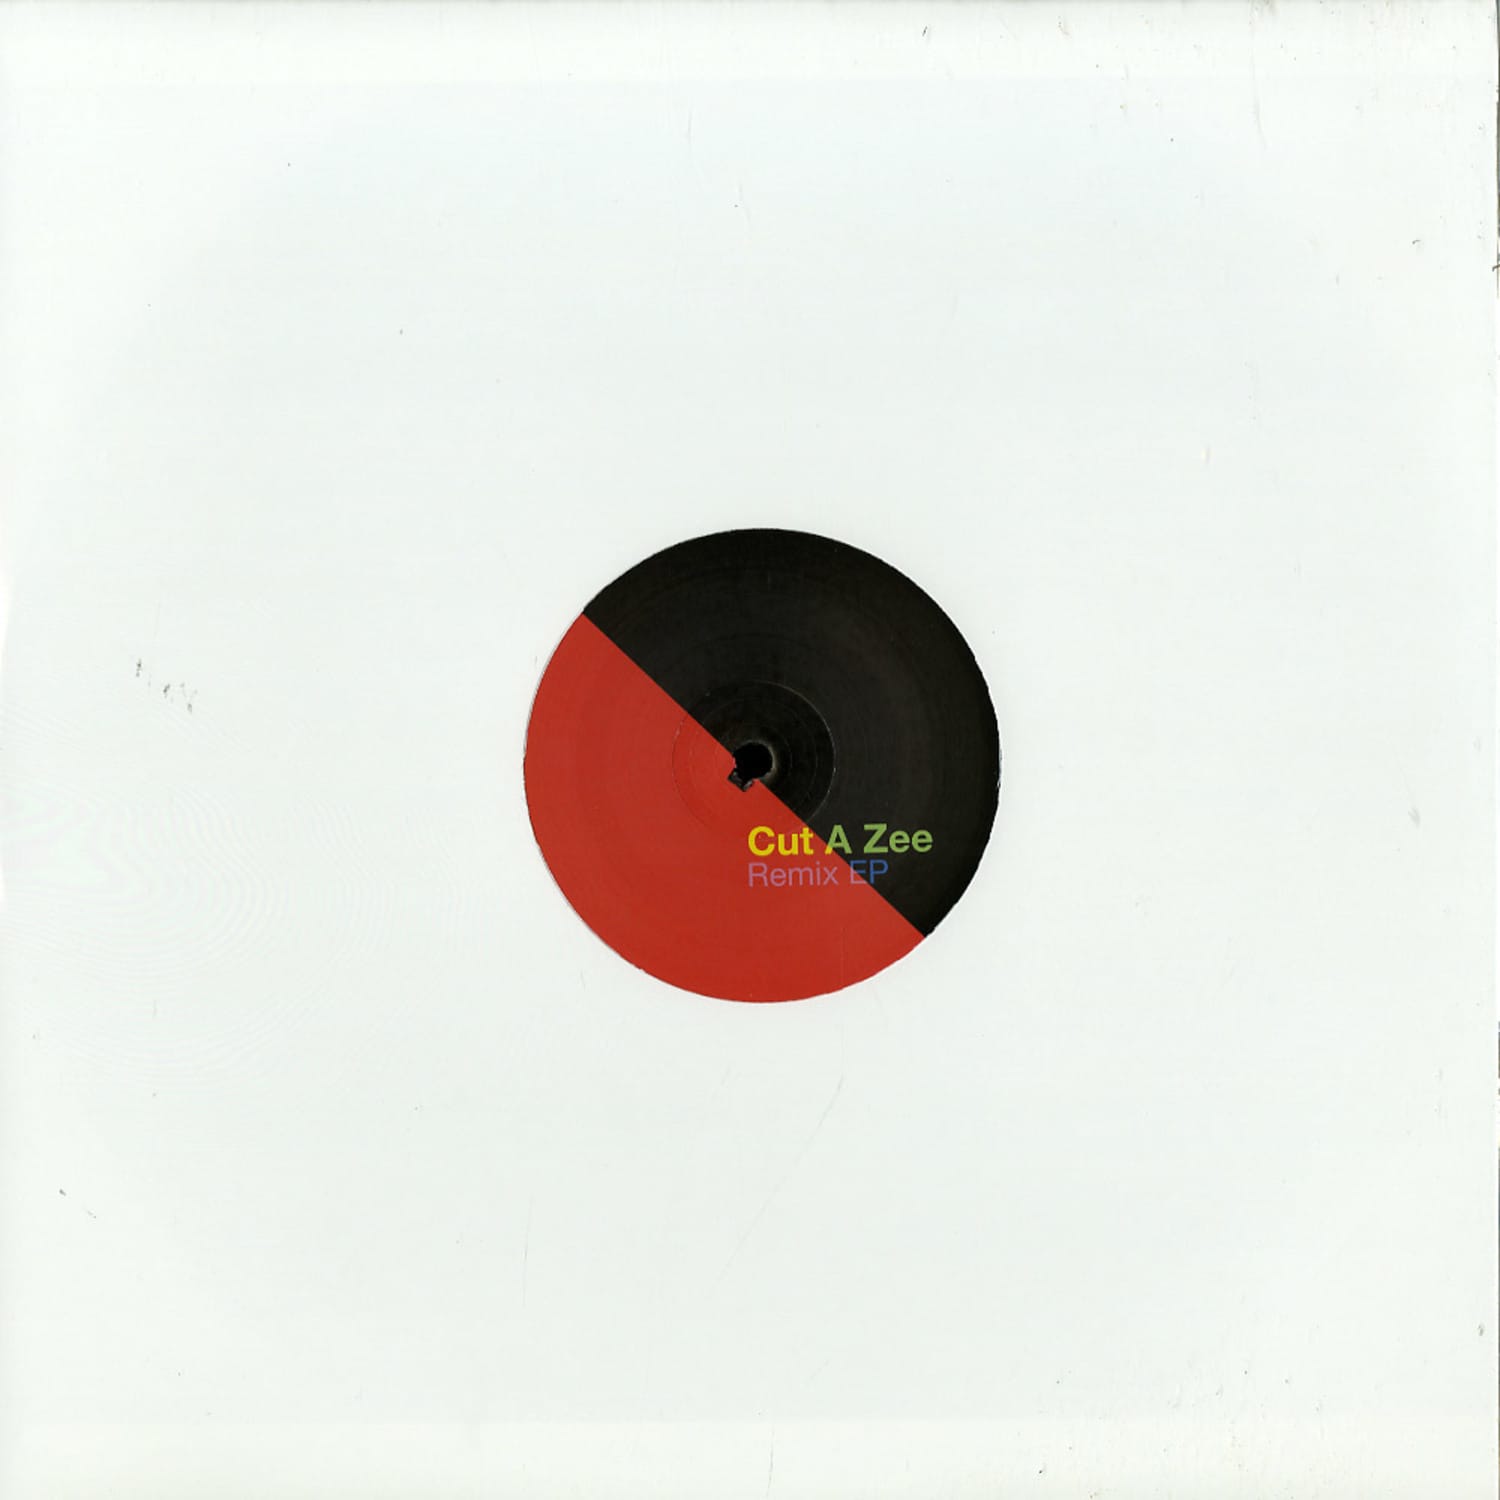 Jay Shepheard / Martin Dawson / Matthew Burton - CUT A ZEE REMIX EP